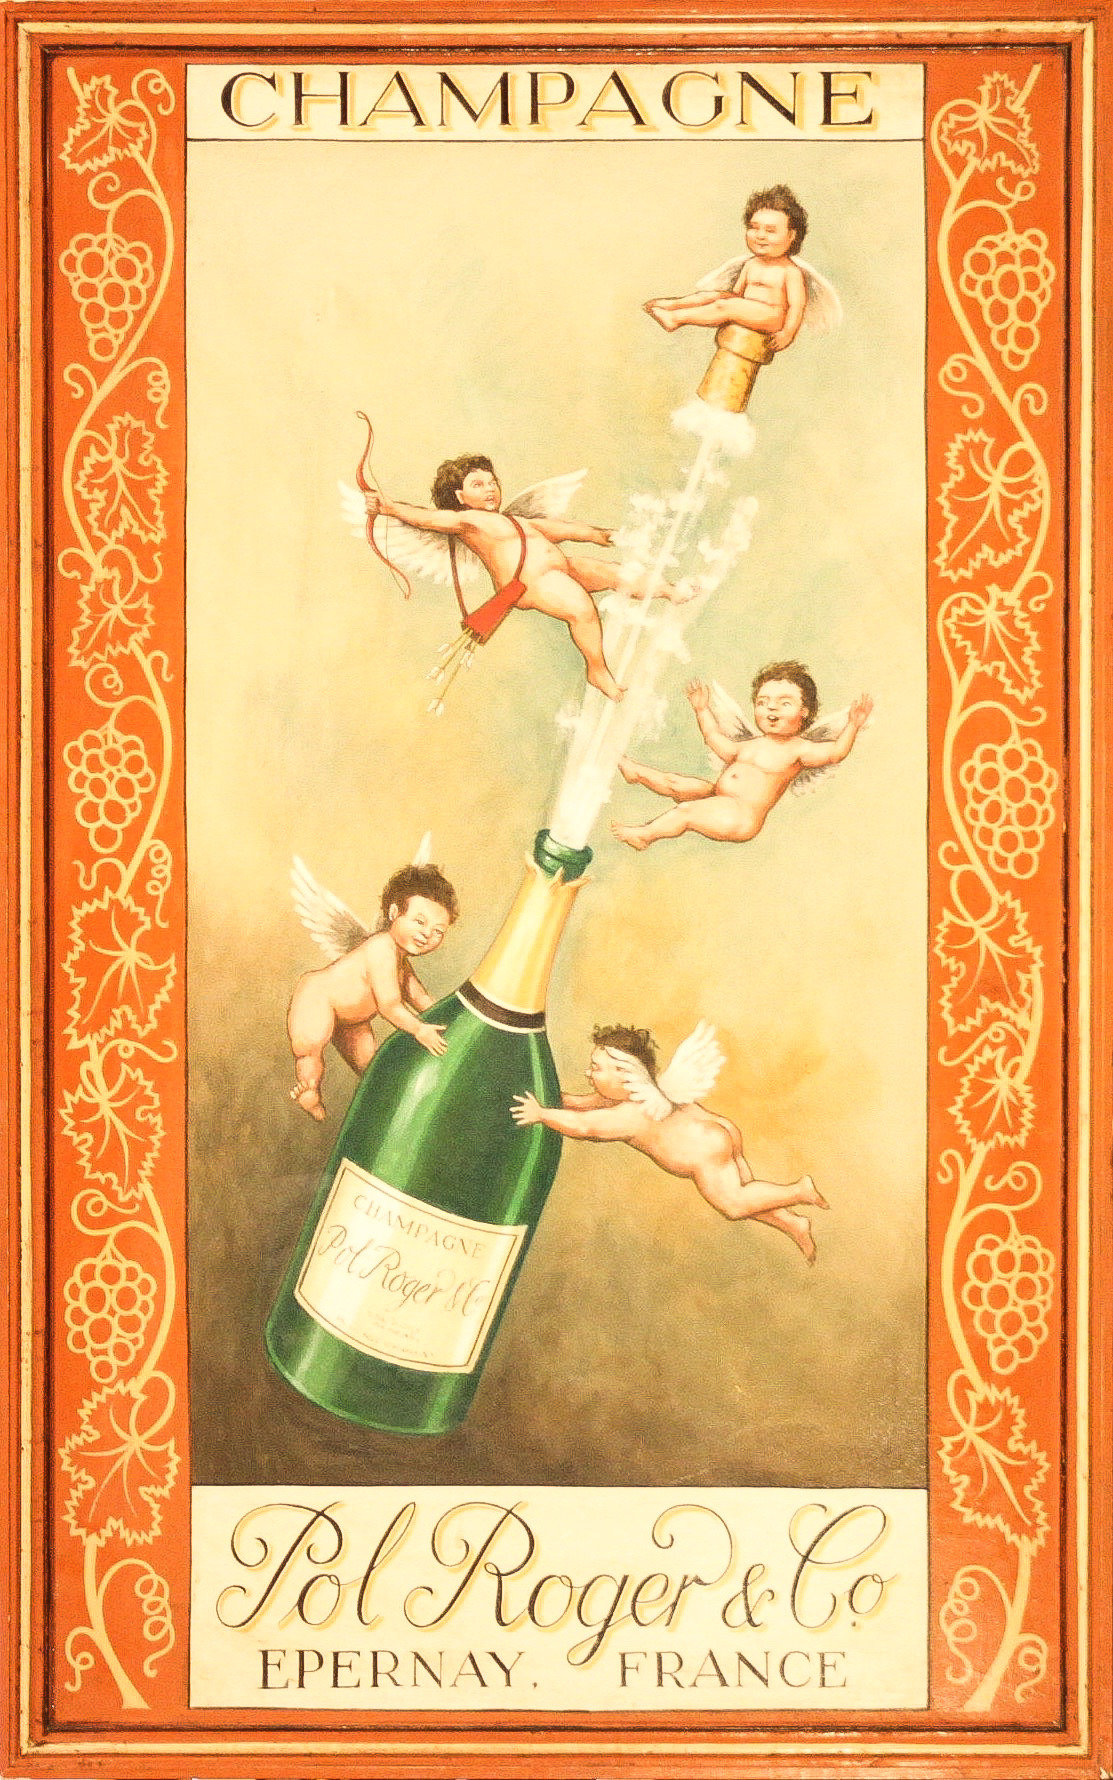 Пару постеров старой рекламы алкоголя. Шампанское Pol Roger История,Алкоголь,Вино,Реклама